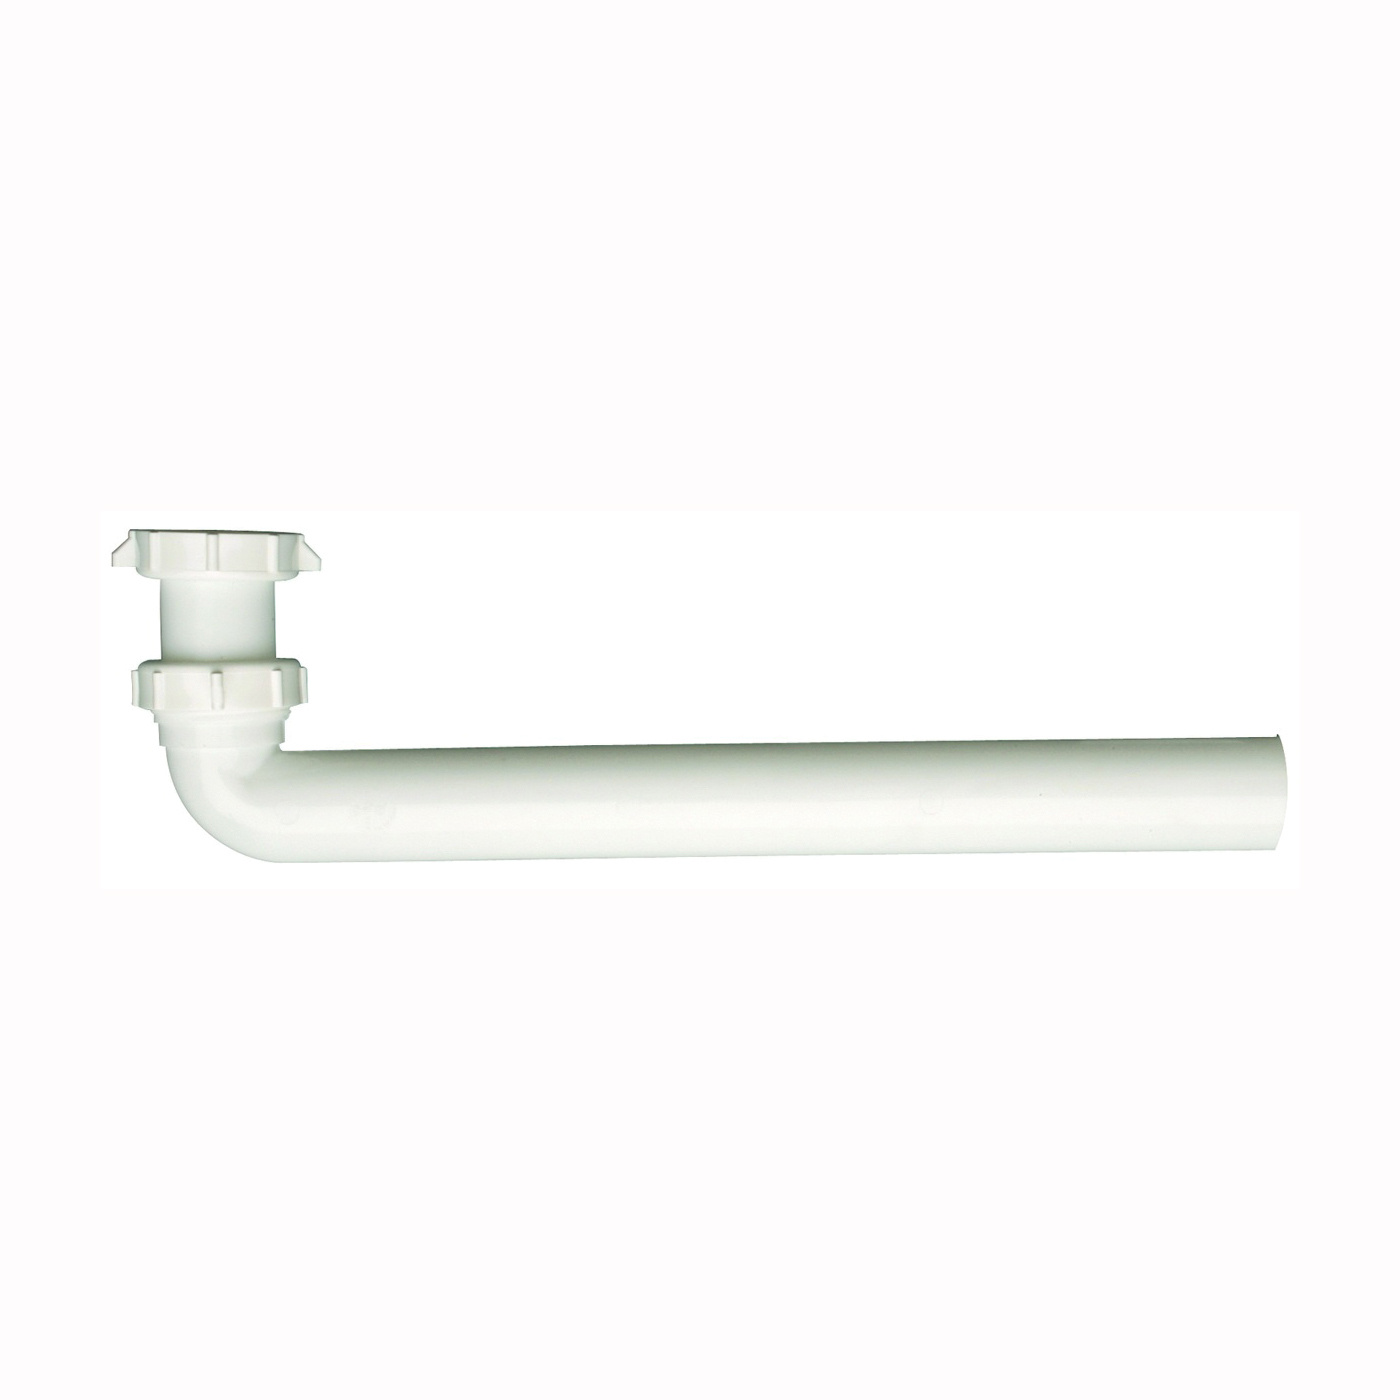 PP20669 Drain Tube, 1-1/2 in, Slip-Joint, Plastic, White